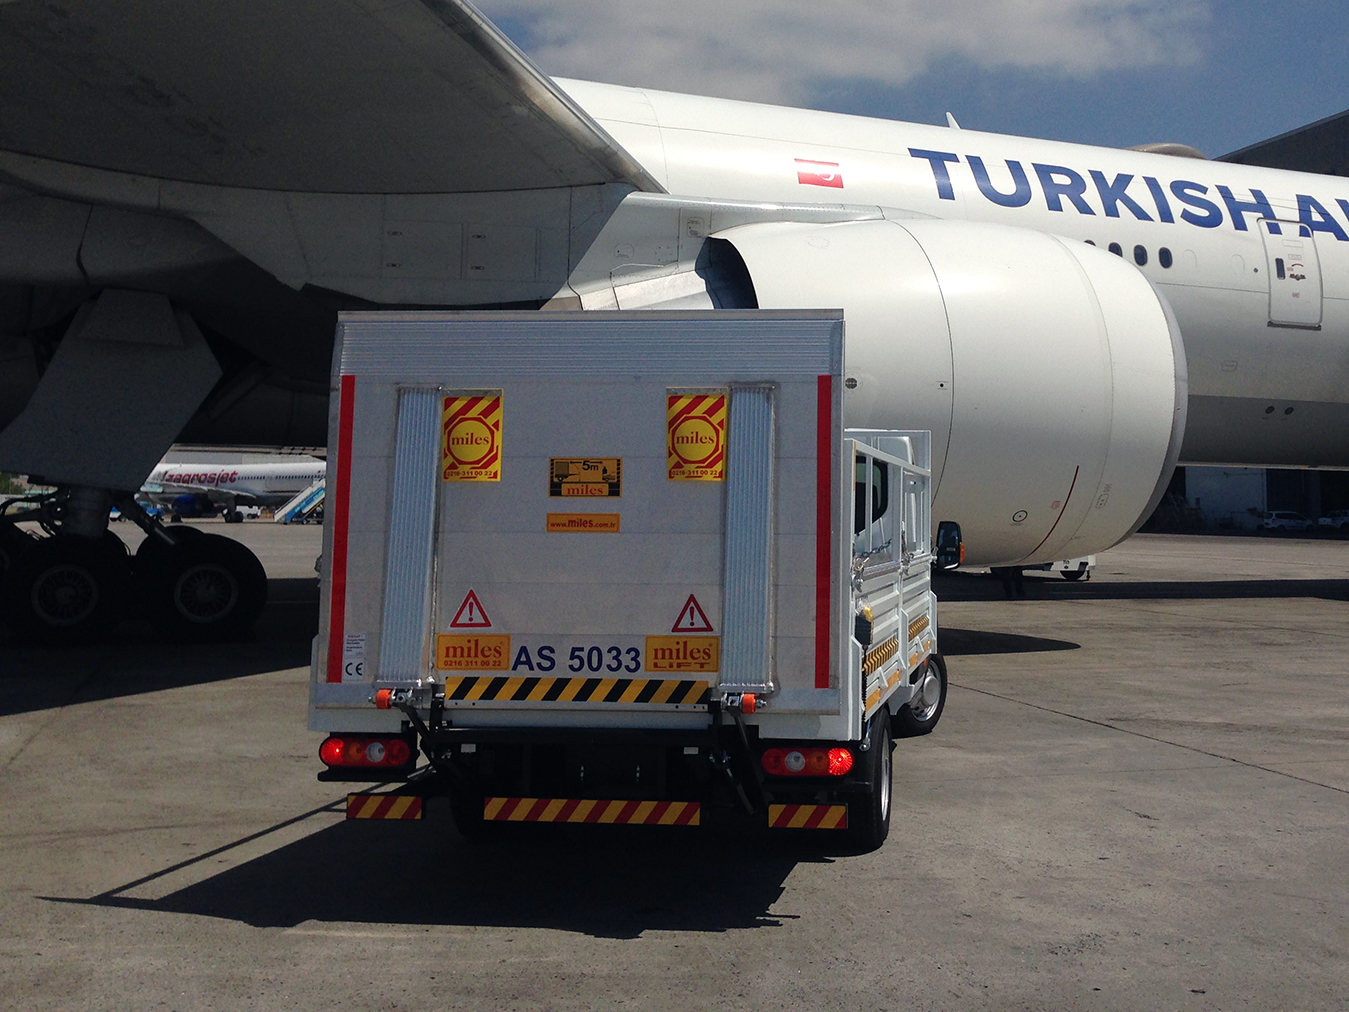 Aircraft Tire Transfer Truck, Maintenance Lifts